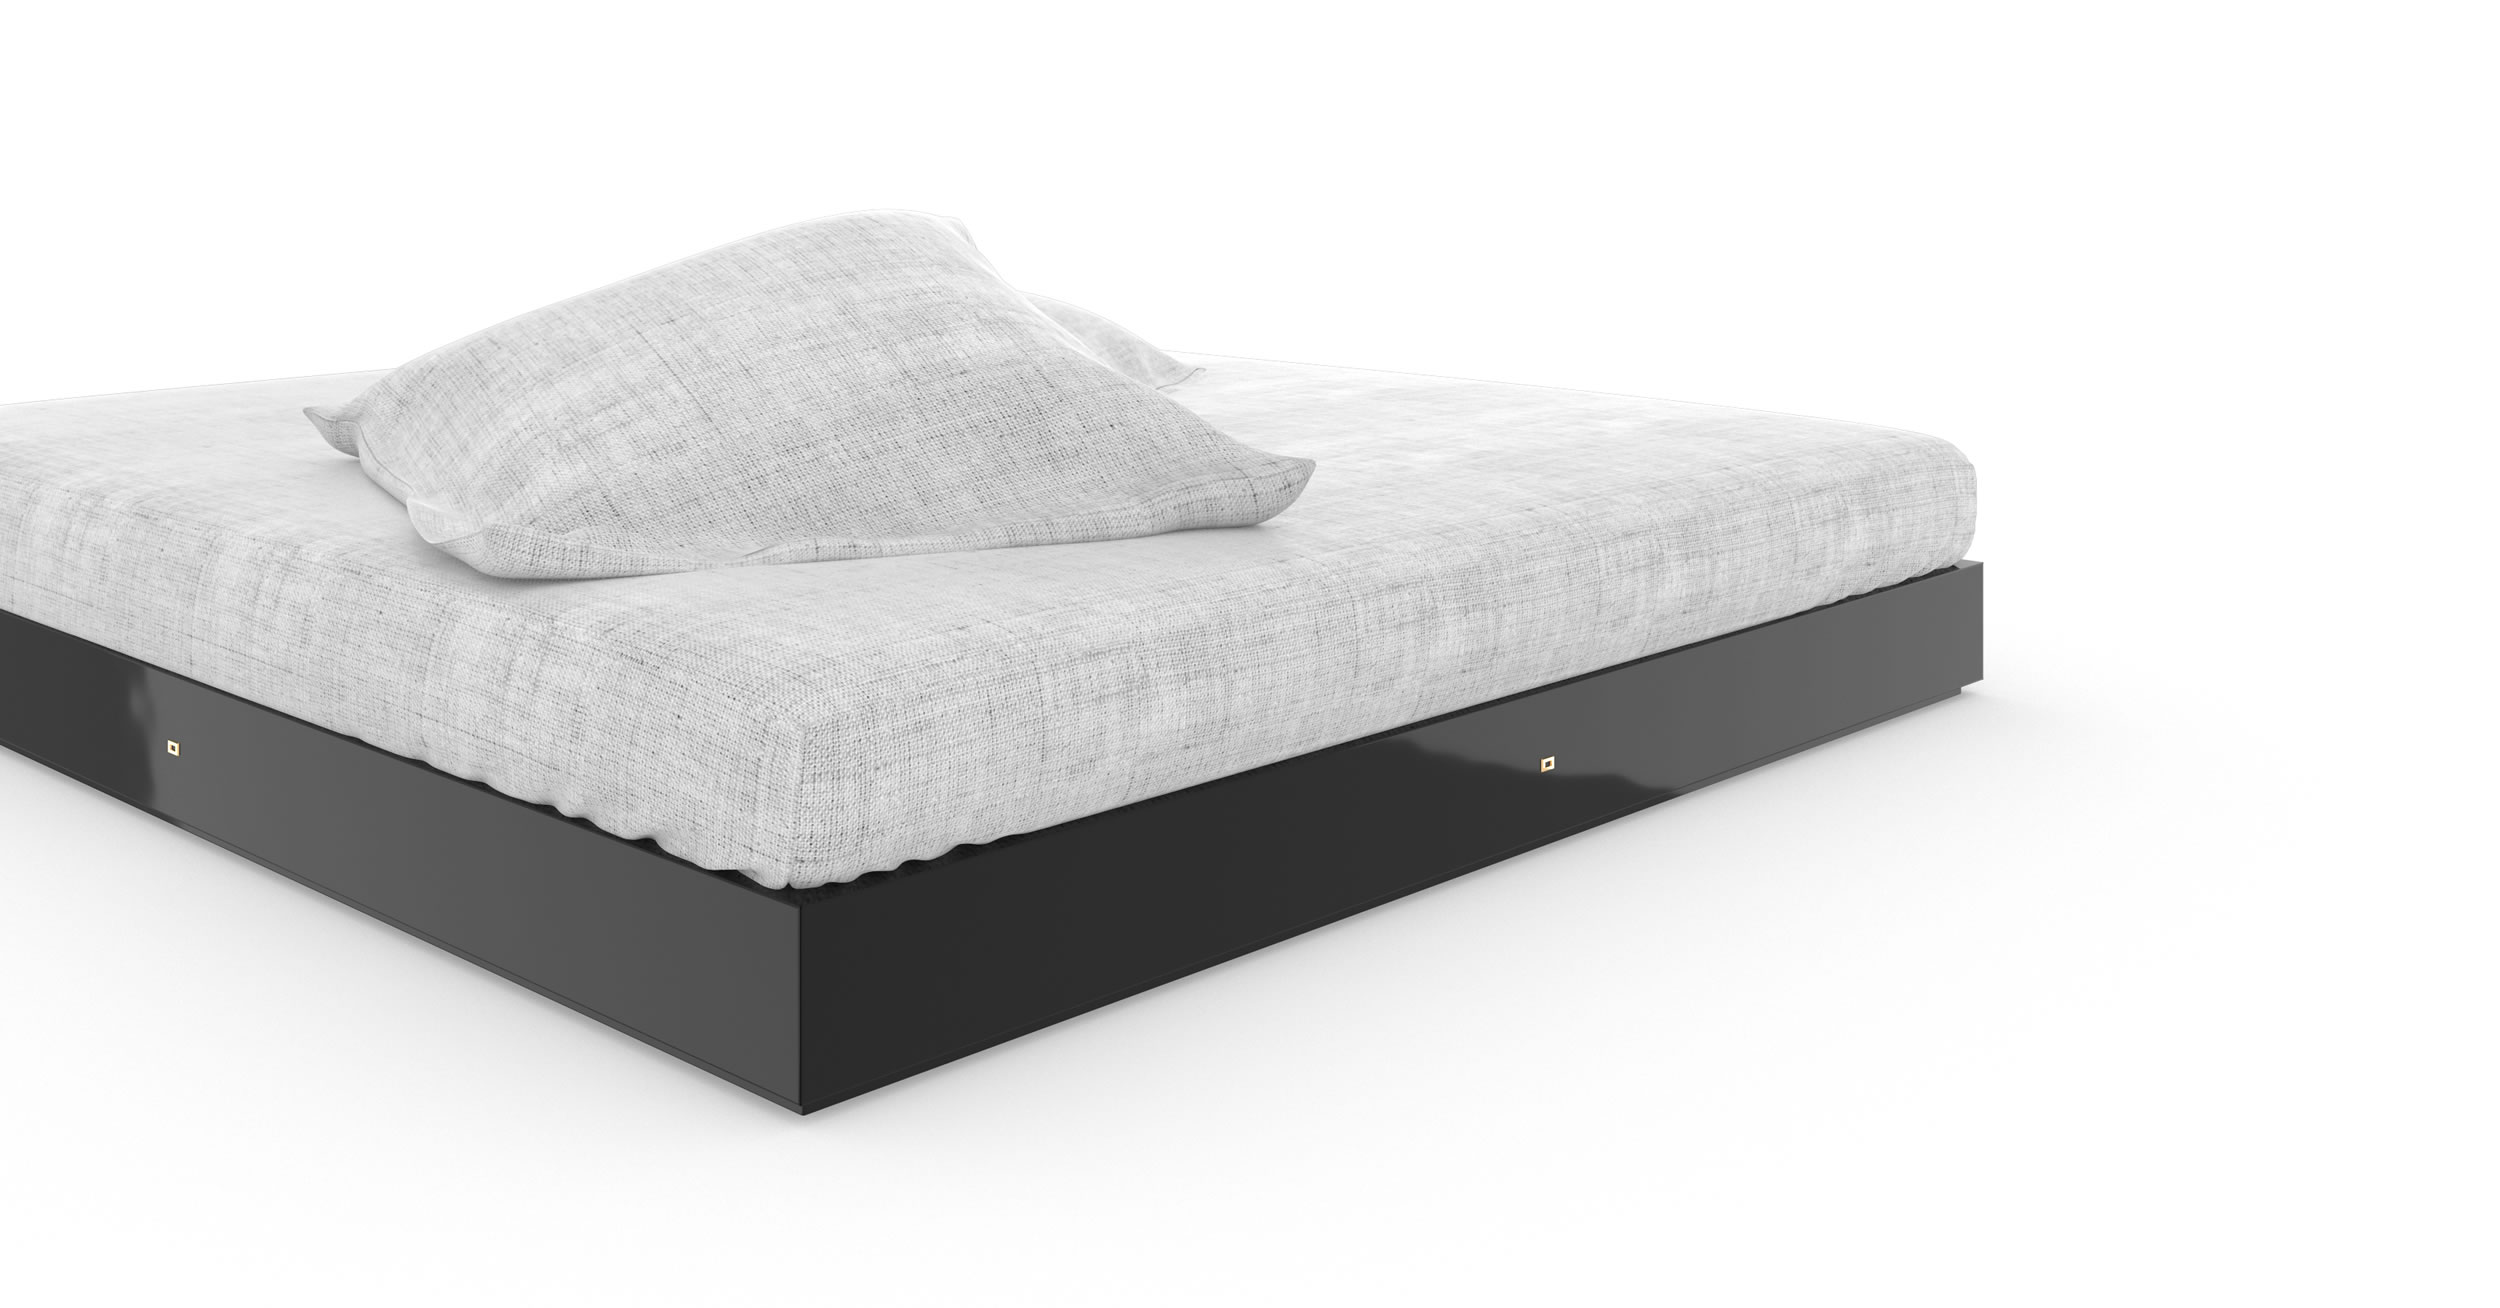 Design Bett Design Schwarz Glaenzend Massgefertigt Einzigartig Exklusiv Luxus InteriorFELIX SCHWAKE